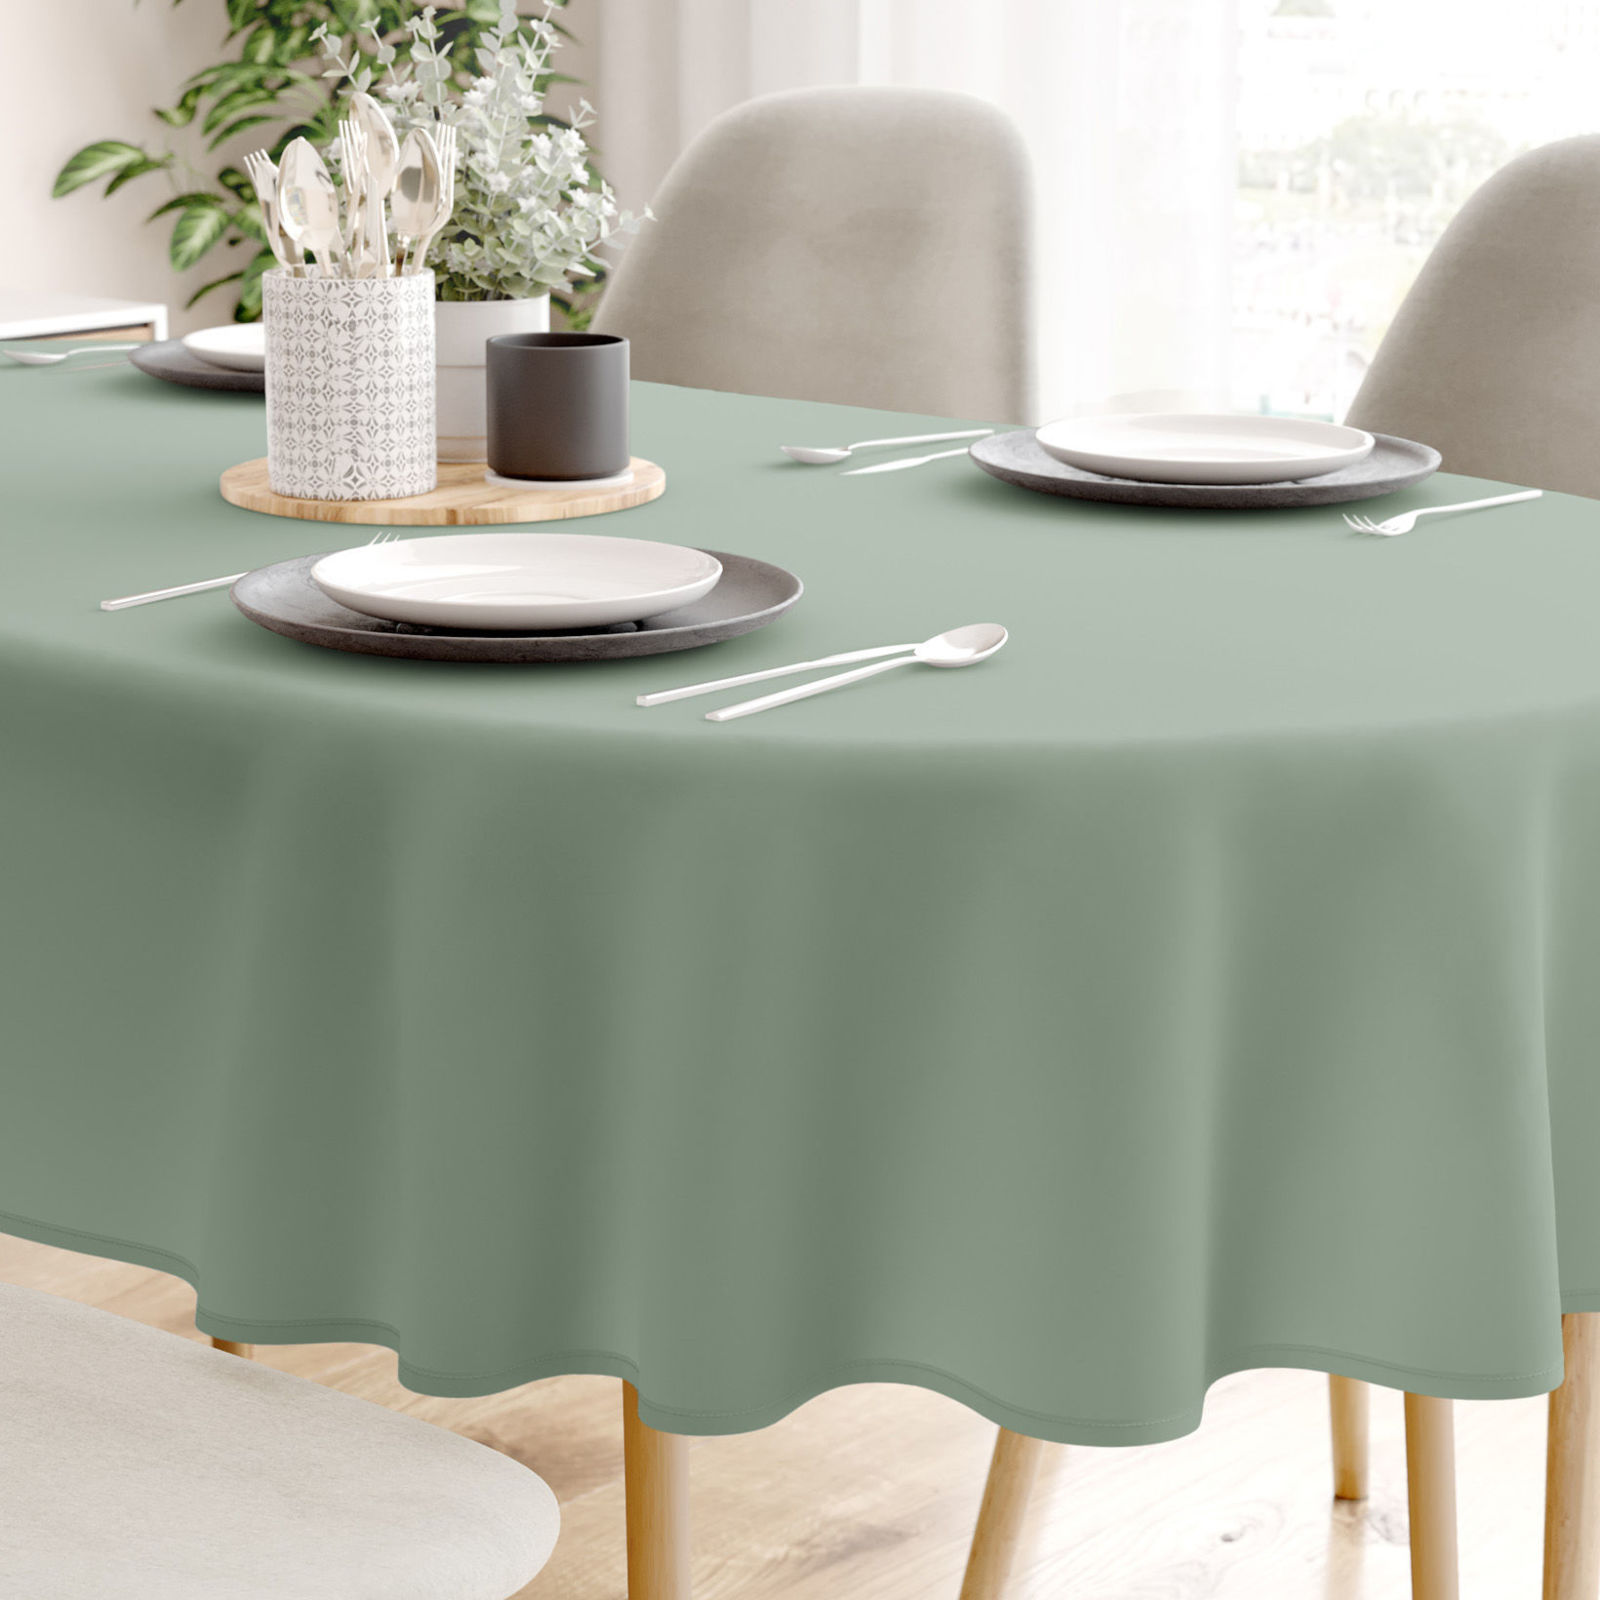 Pamut asztalterítő - Zsálya színű - ovális